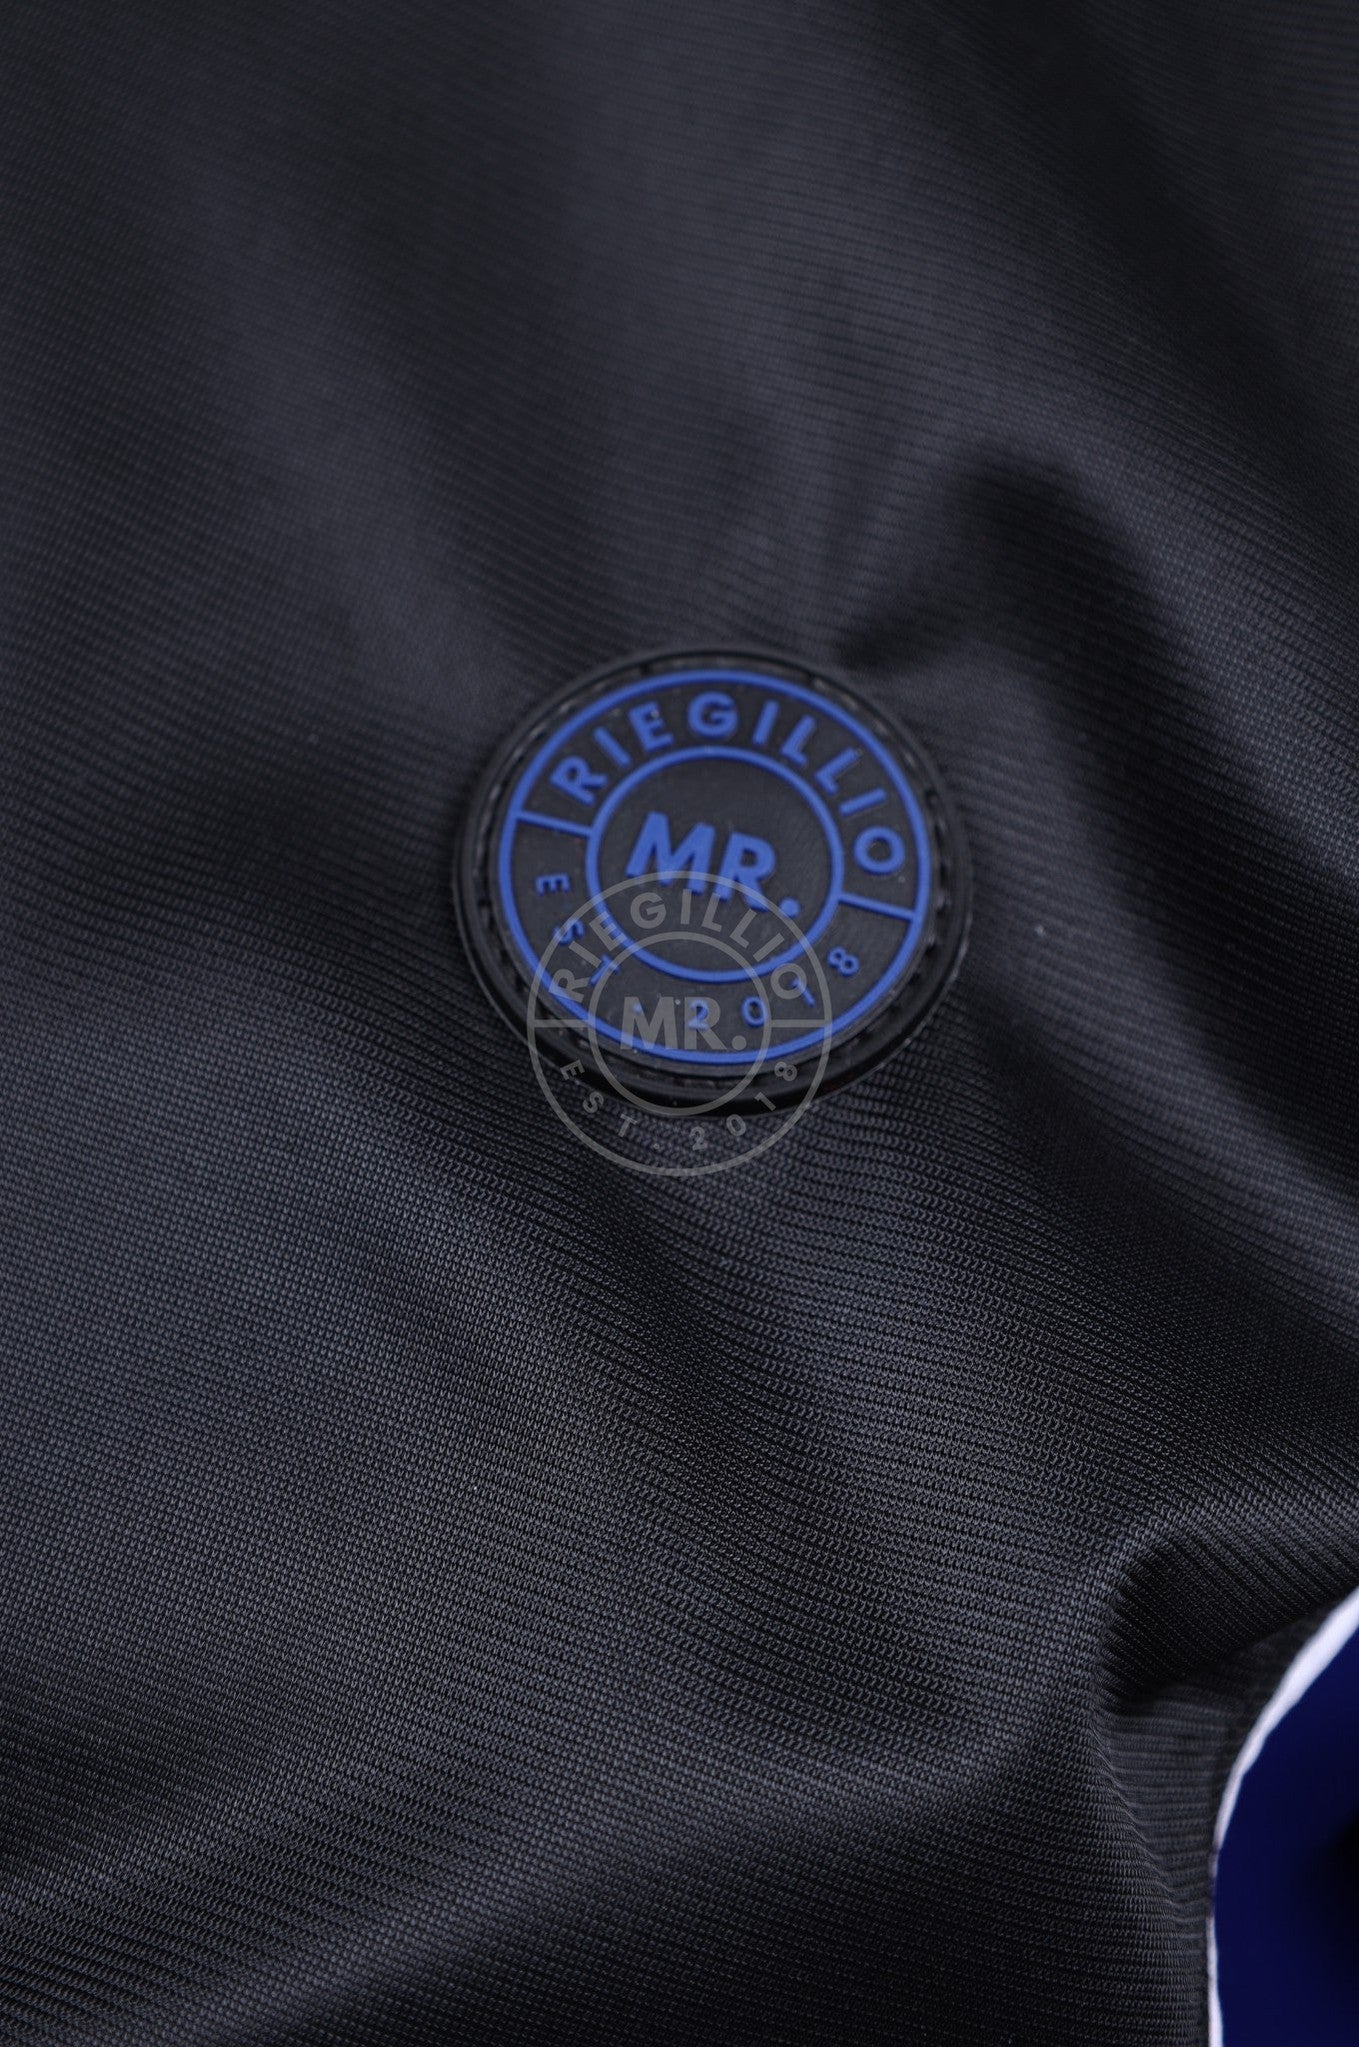 MR. 24 Tracksuit Jacket - Blue at MR. Riegillio